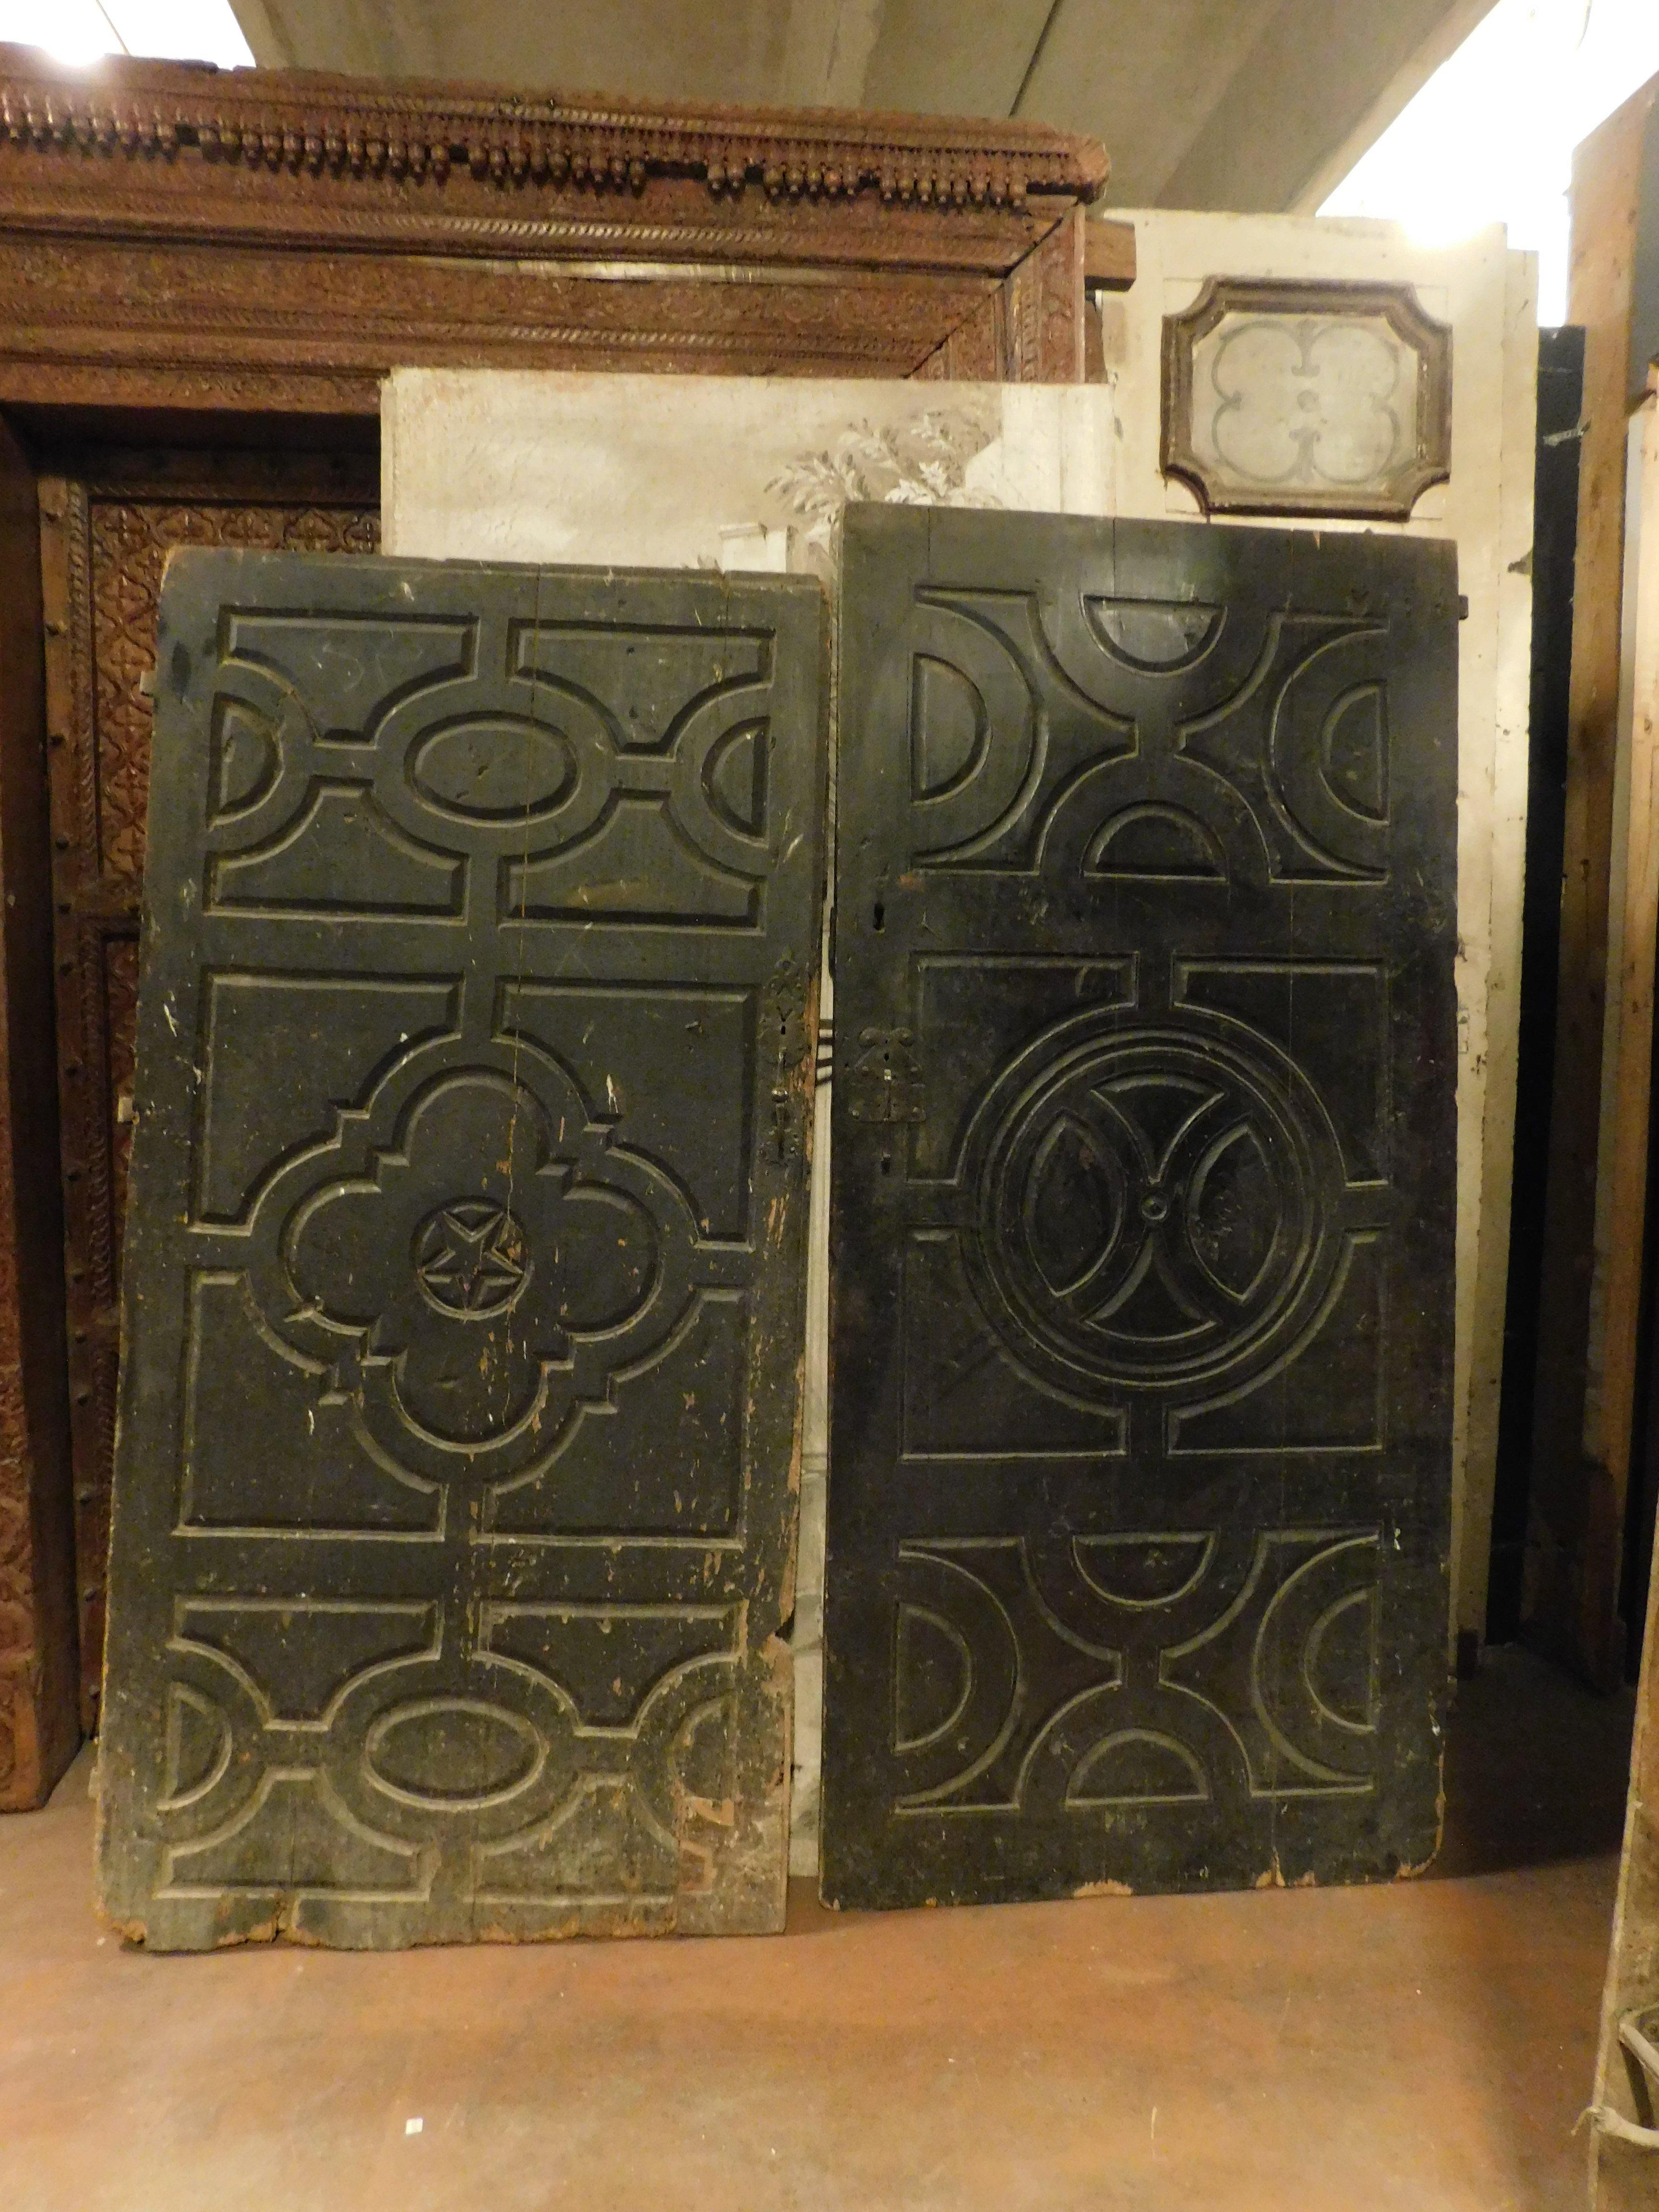 Antikes Paar alte, schwarz lackierte und handgeschnitzte Innentüren, die im 18. Jahrhundert in Italien für einen Adelspalast der damaligen Zeit von Hand gefertigt wurden.
Sie wurden ohne Rahmen an der Wand angebracht und konnten auch als dekorative